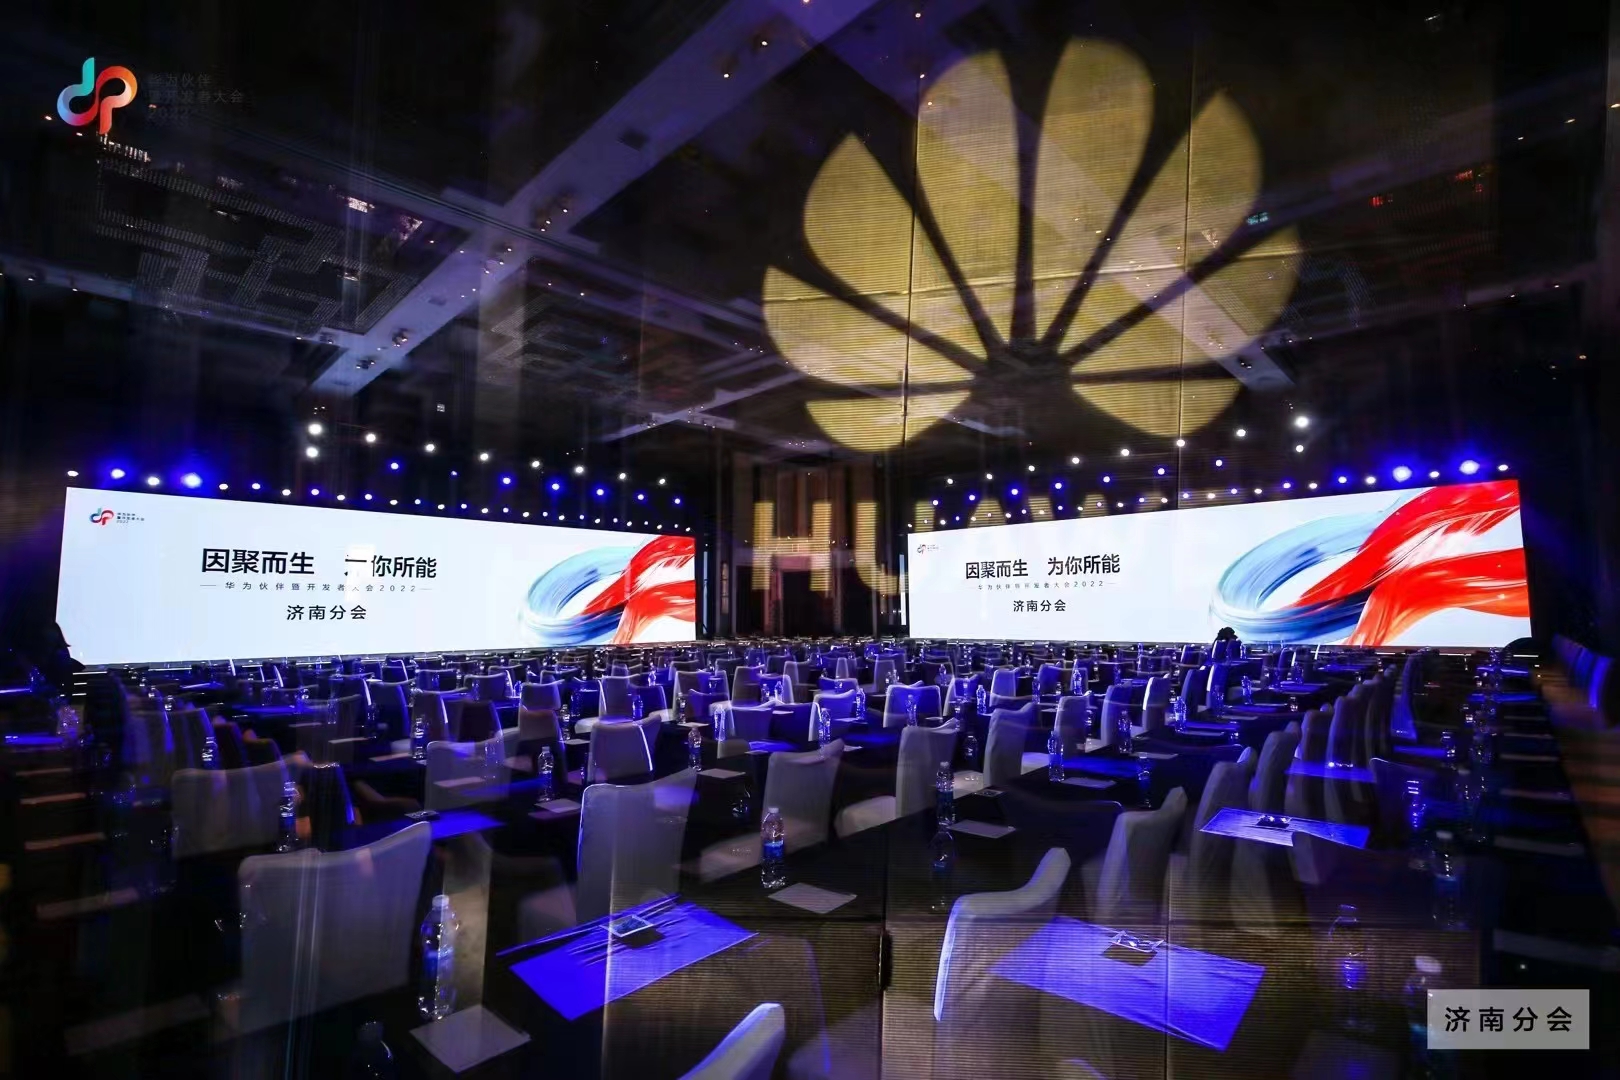 山东卓文信息科技有限公司受邀出席“华为伙伴暨开发者大会2022”济南分会